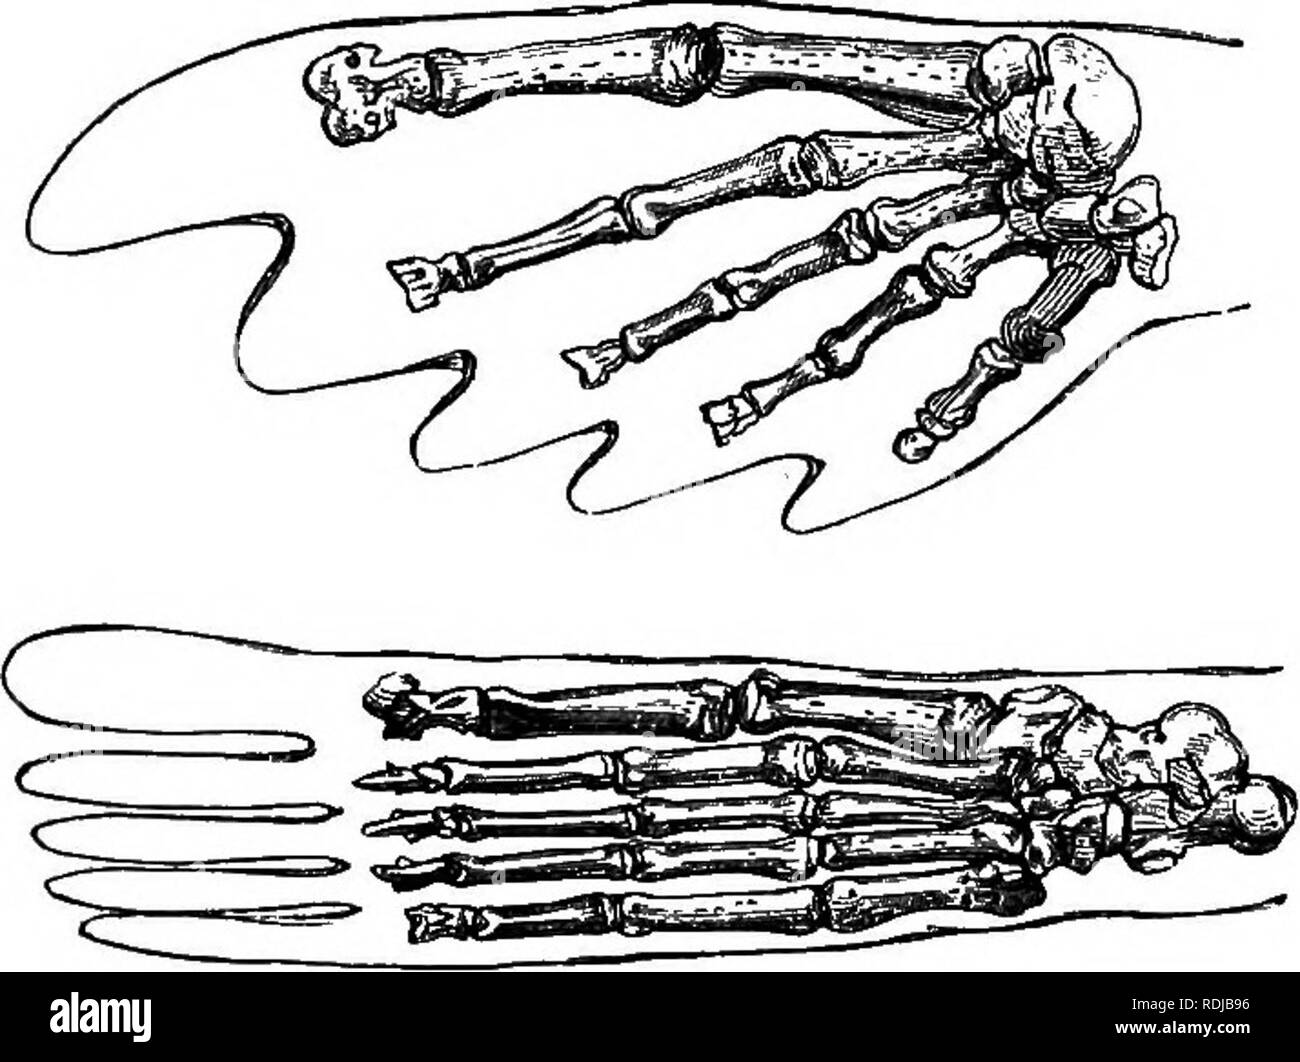 Catalogue des phoques et baleines au British Museum . Les joints (animaux)  ; les baleines. 44^ phocidés. B. Mars avec un suhcyUndriccd fUdirust,  externe, conque. Les orteils du pied postérieur suheqwd,